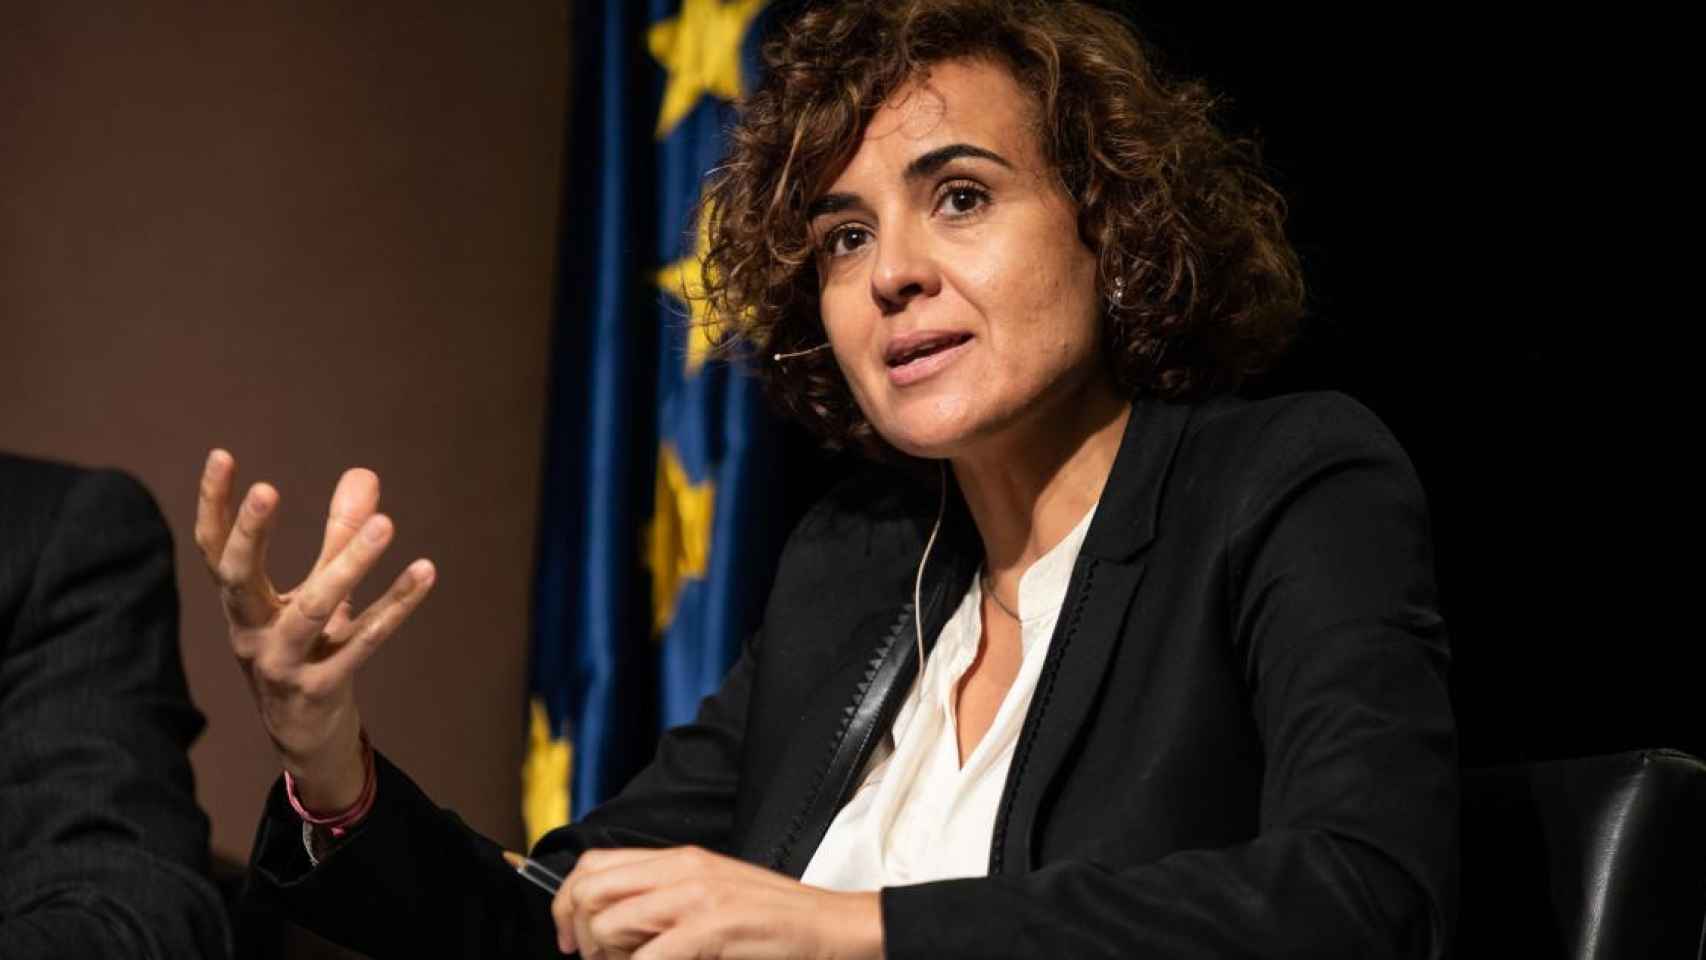 Dolors Montserrat, portavoz del PP en la Eurocámara y posible candidata del PPC a la alcaldía de Barcelona / EP